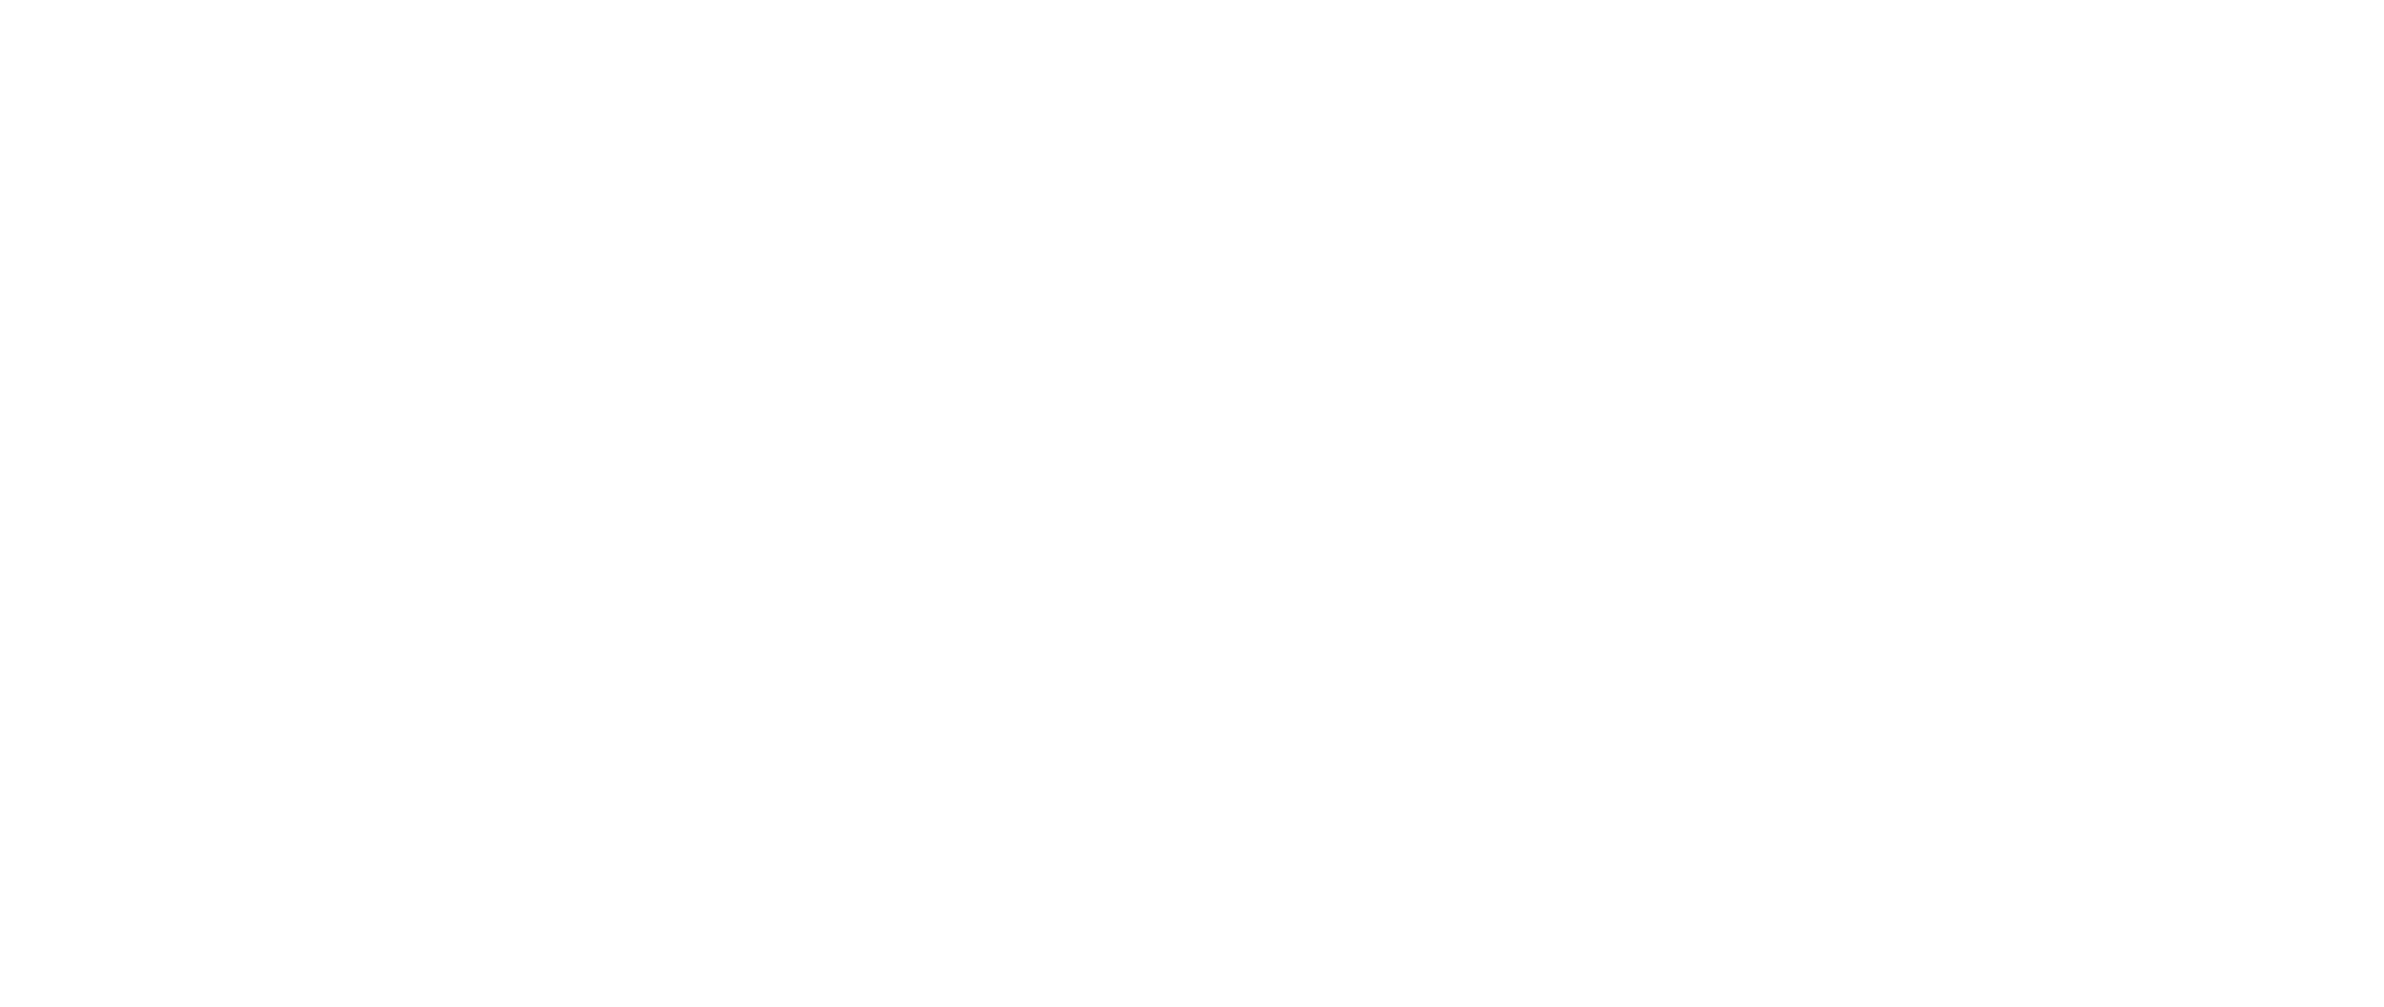 human@human